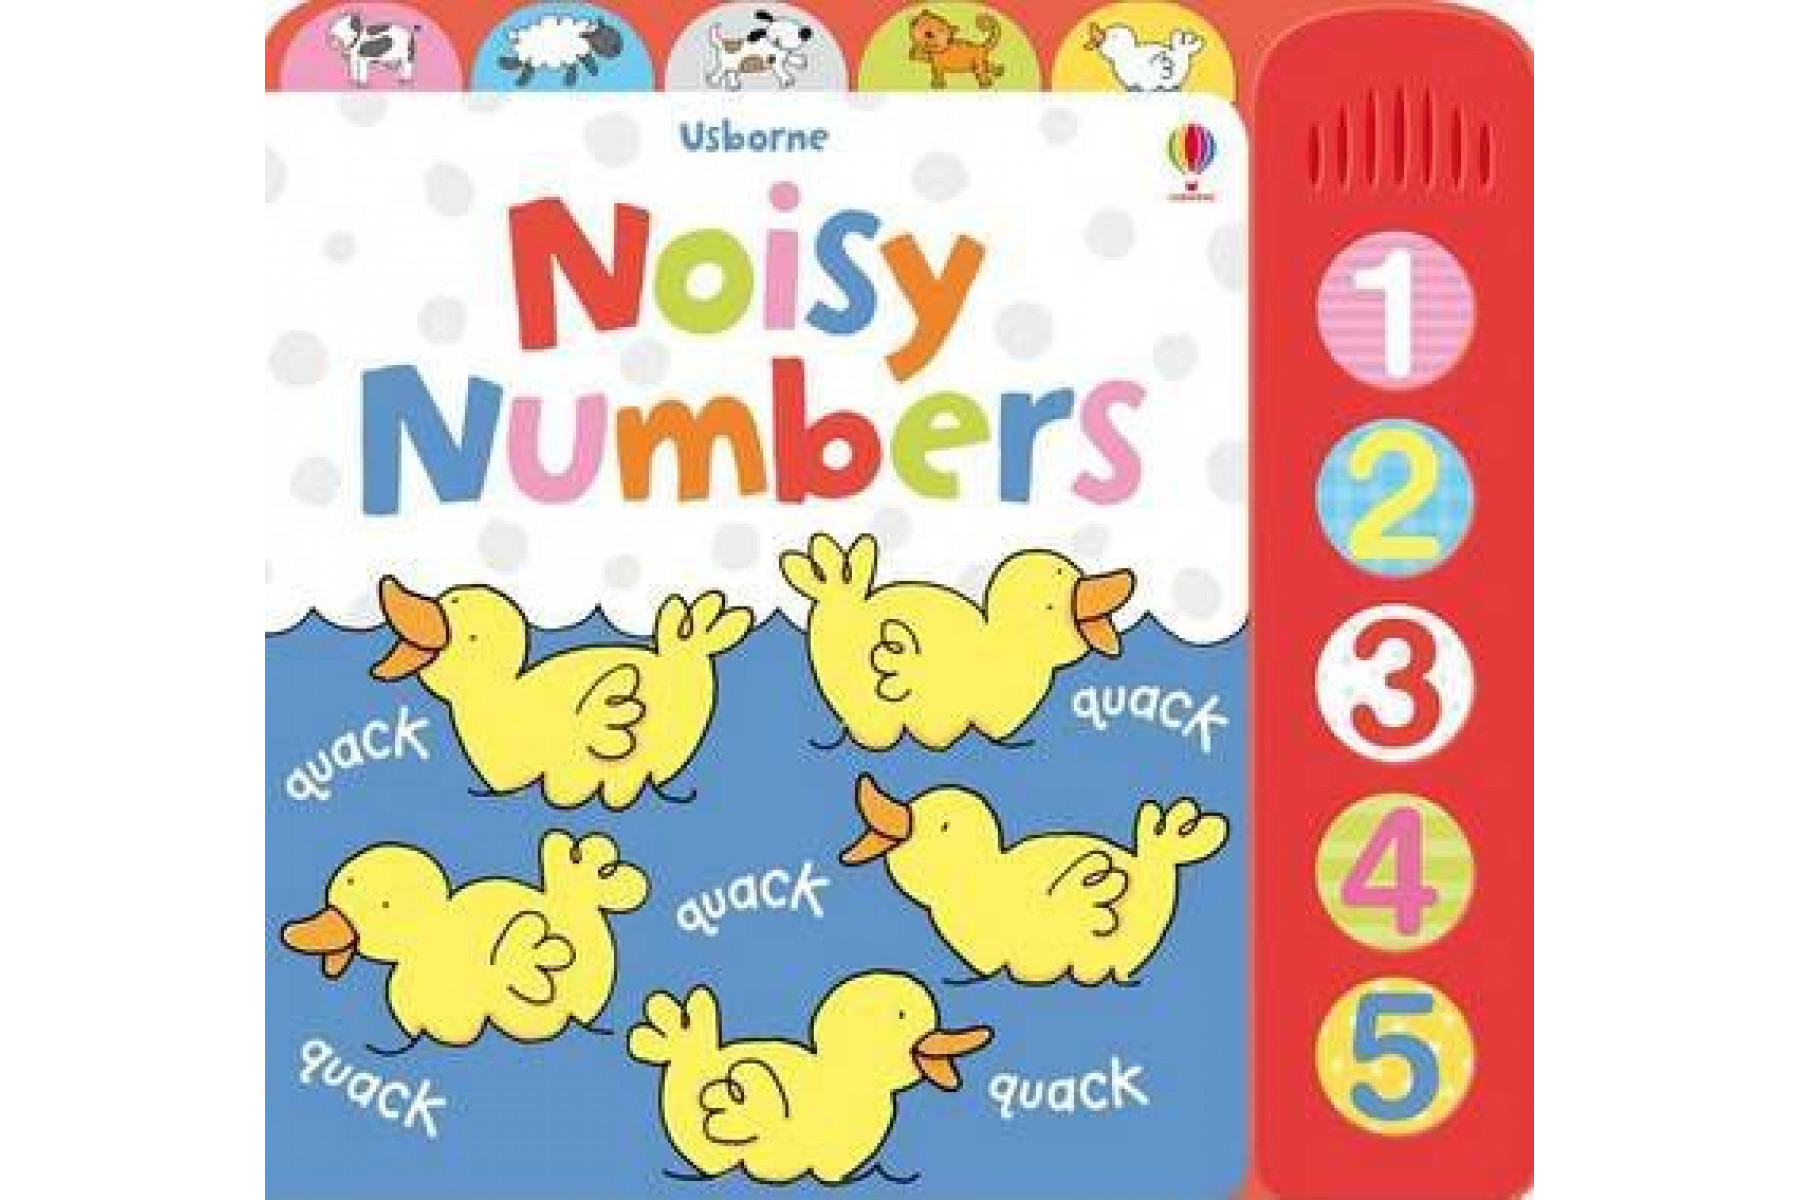 Noisy Numbers (Noisy Books)